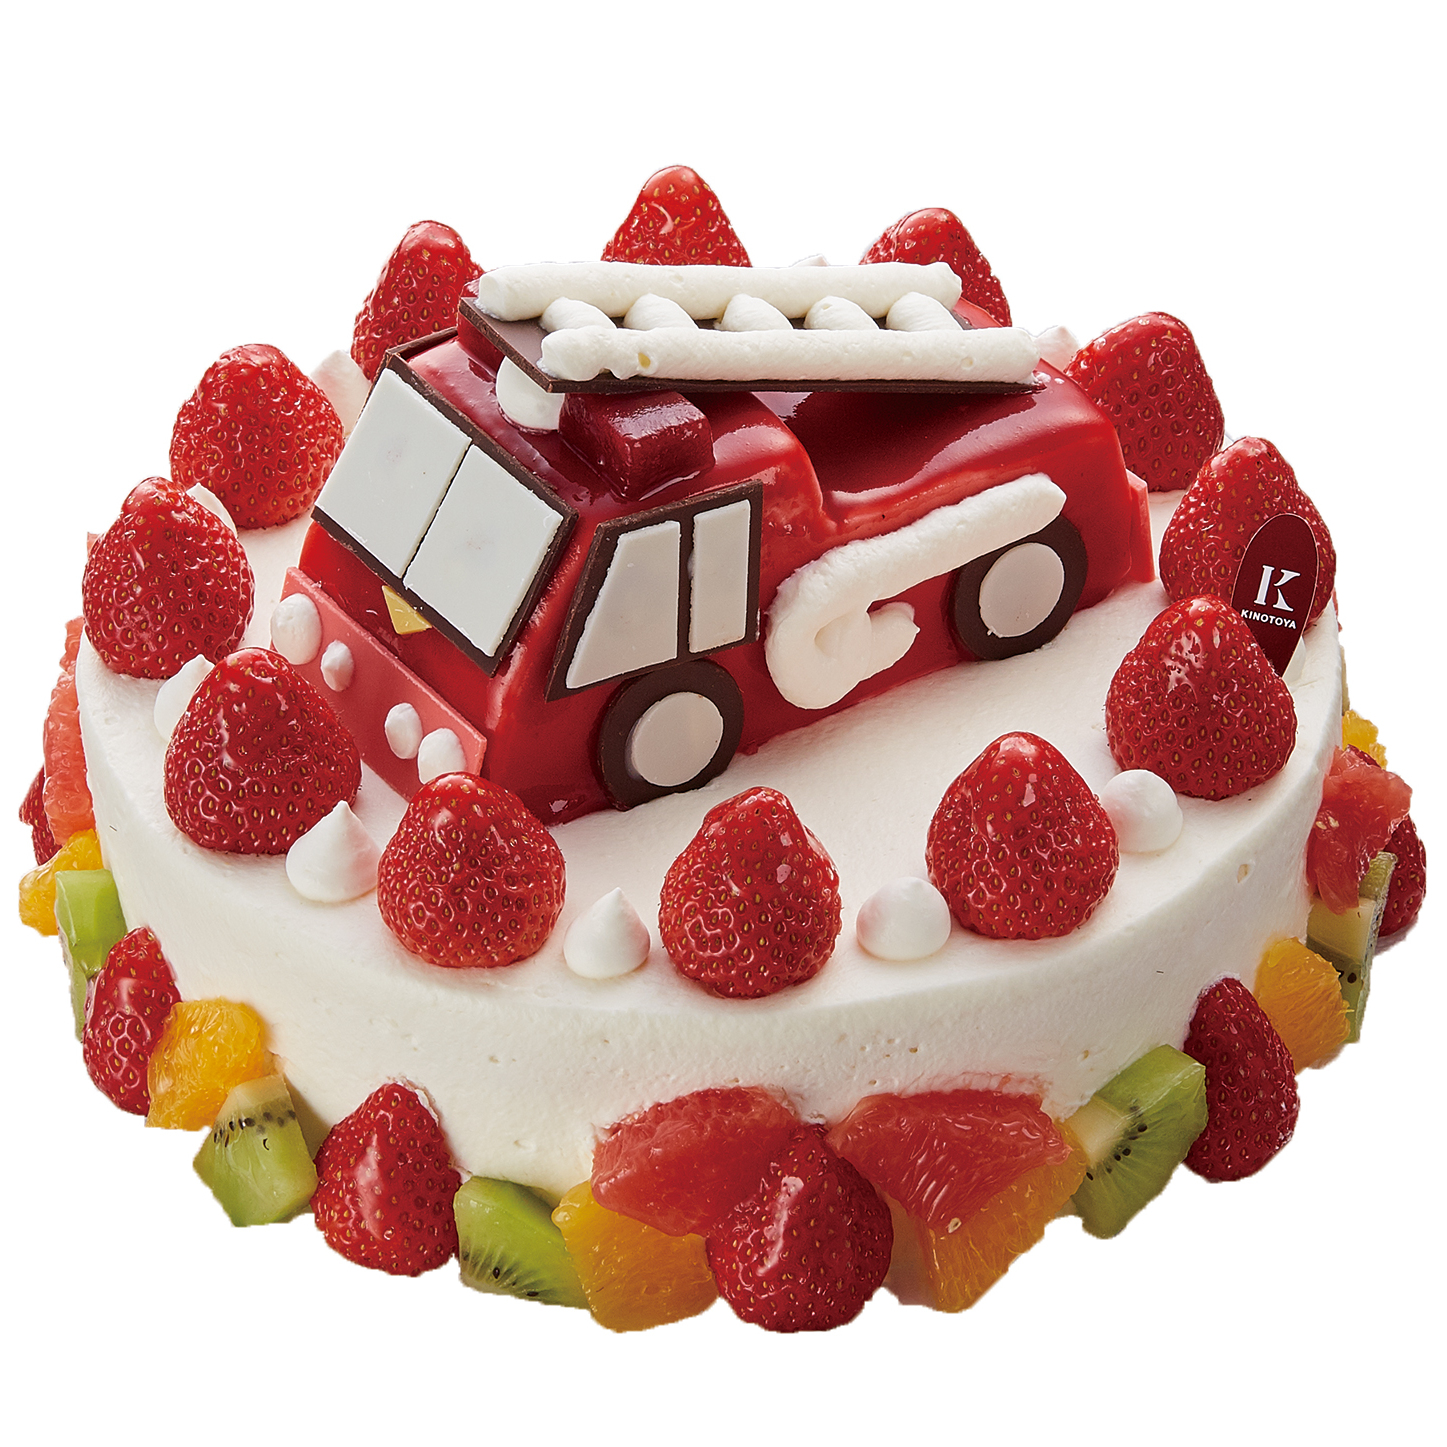 デコレーションケーキ 札幌の洋菓子スイーツ きのとやオンラインショップ